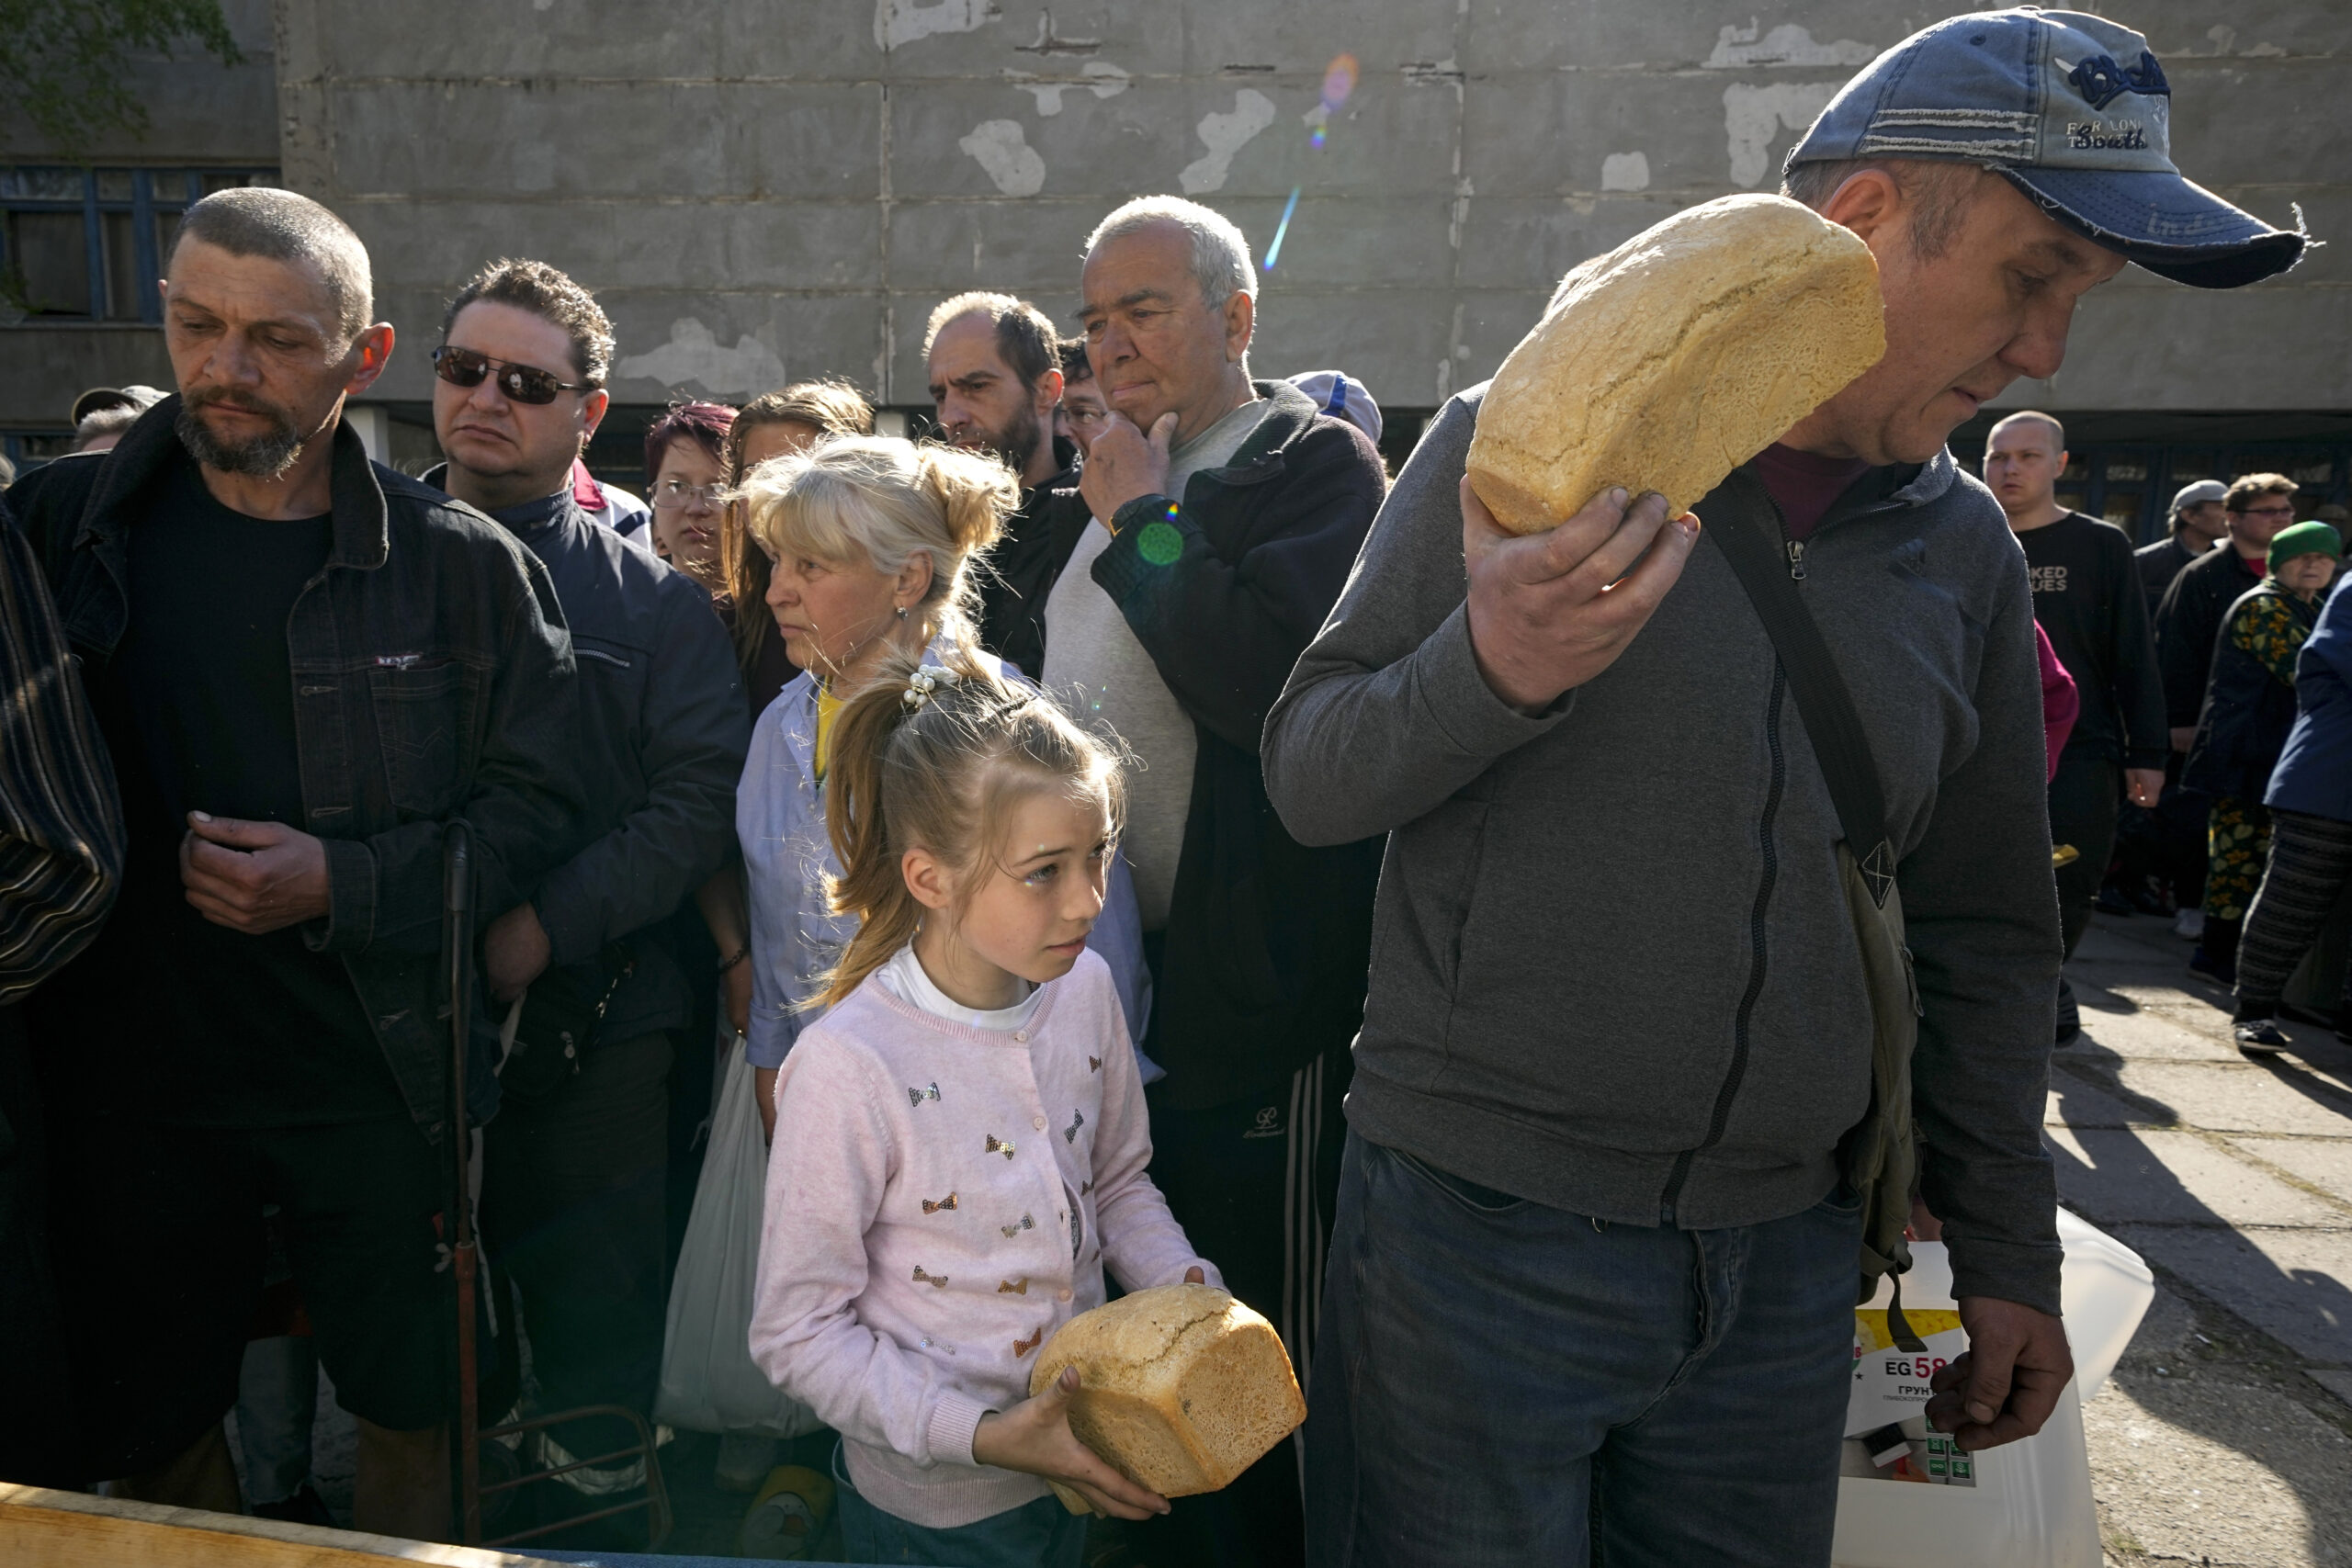 В Мариуполе МЧС “Донецкой народной республики” раздает местным жителям гуманитарную помощь, хлеб и чистую воду. Фото было сделано во время пресс-тура Минобороны России. 29 апреля 2022 года. Фото AP/Scanpix/LETA